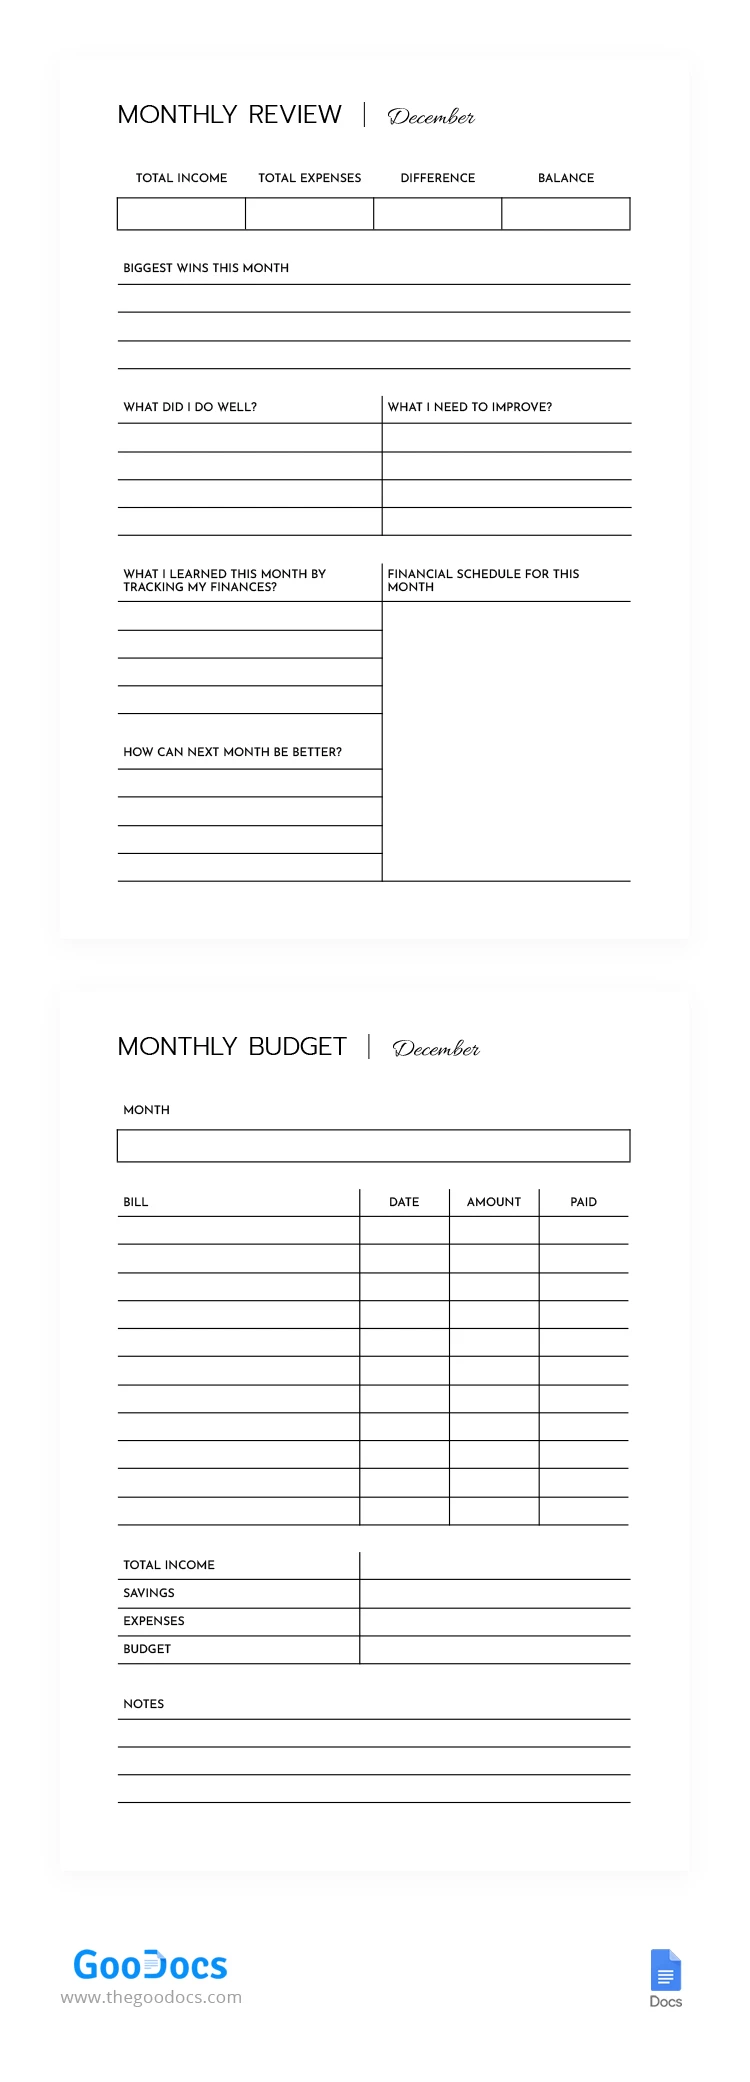 Presupuesto financiero mensual - free Google Docs Template - 10068568